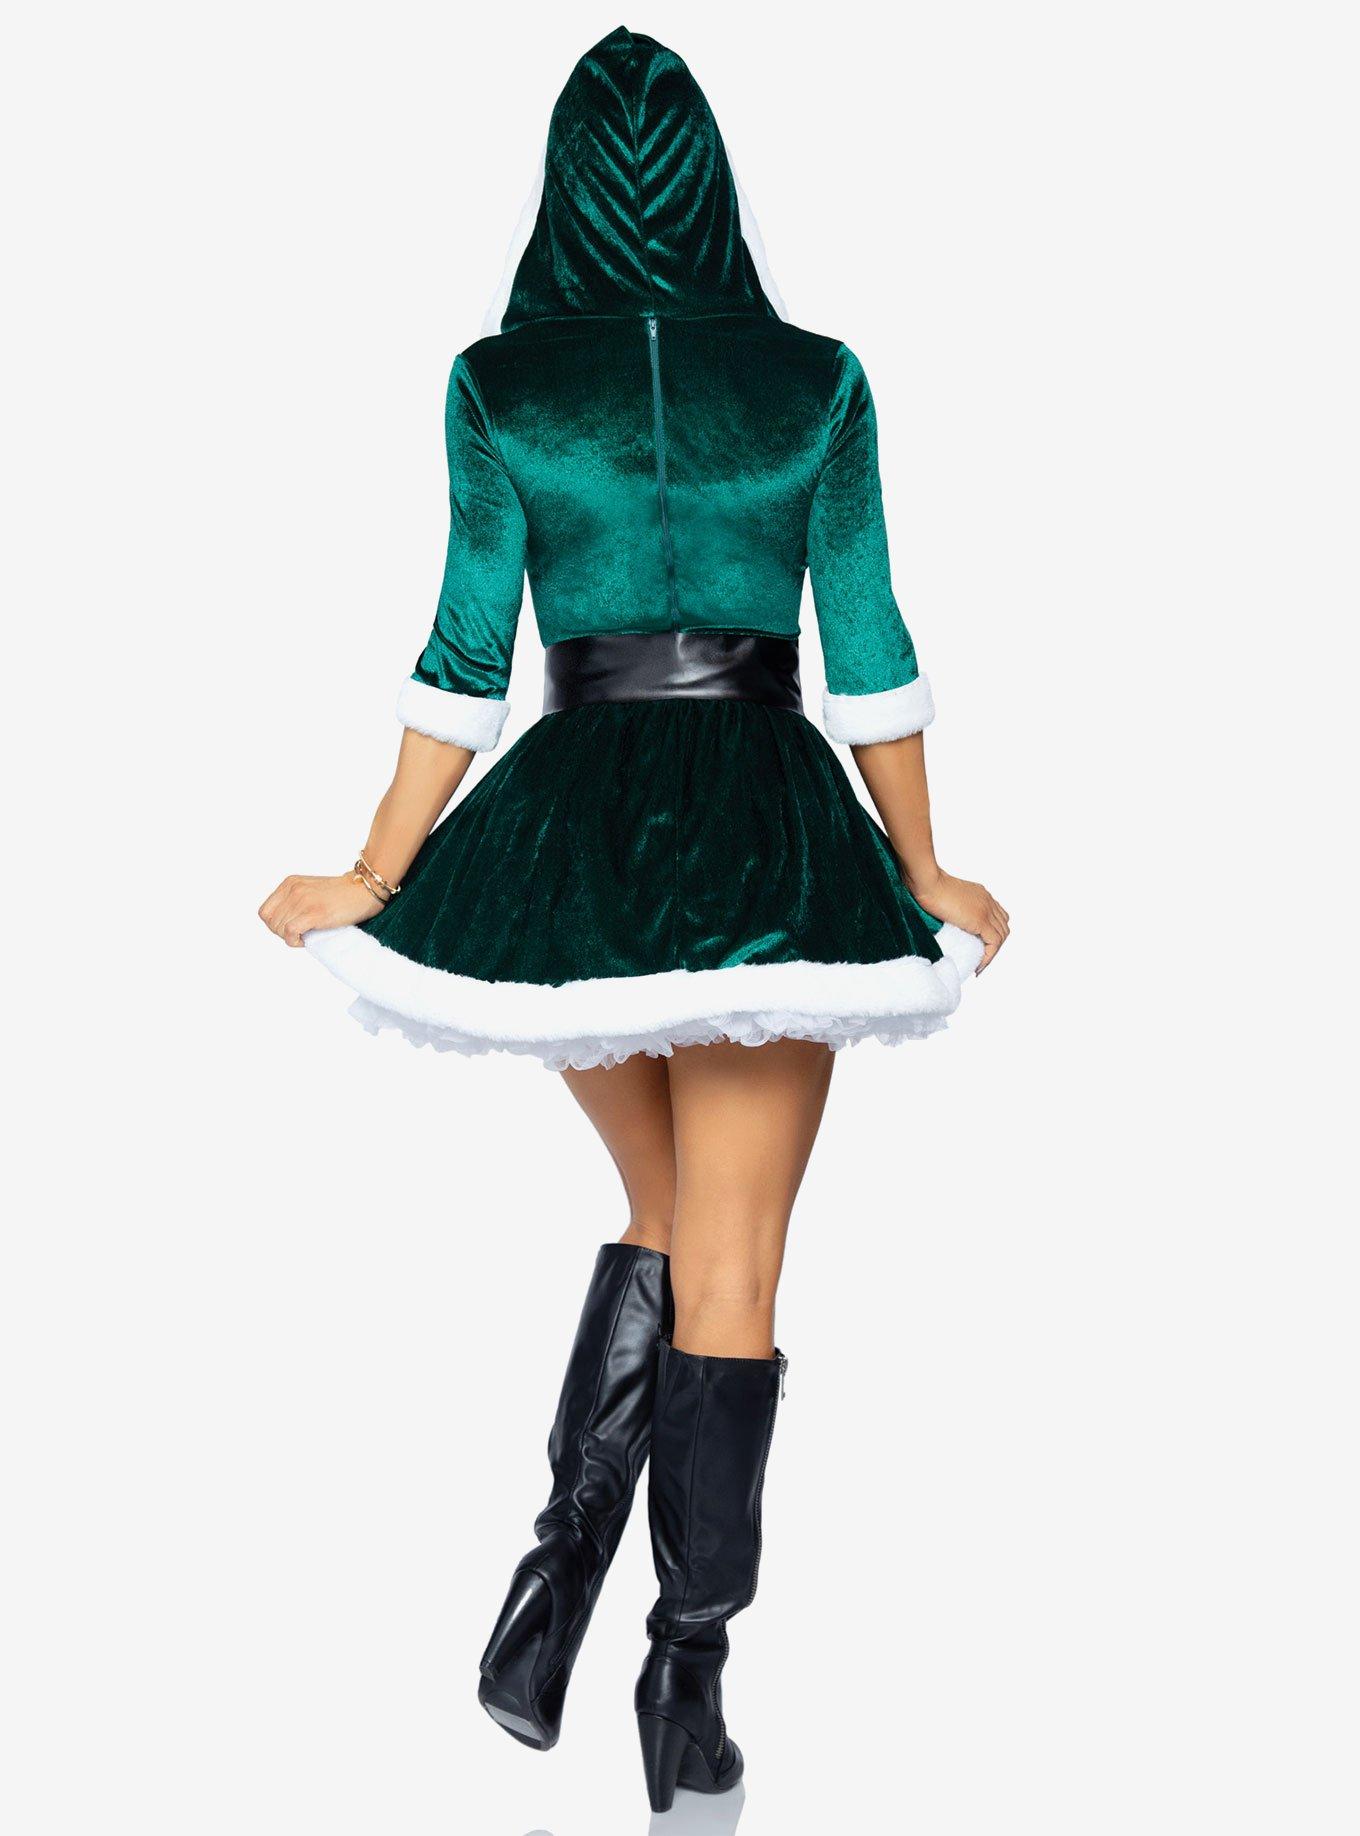 Mrs. Claus Costume Velvet Hooded Dress with Belt Green, GREEN, alternate